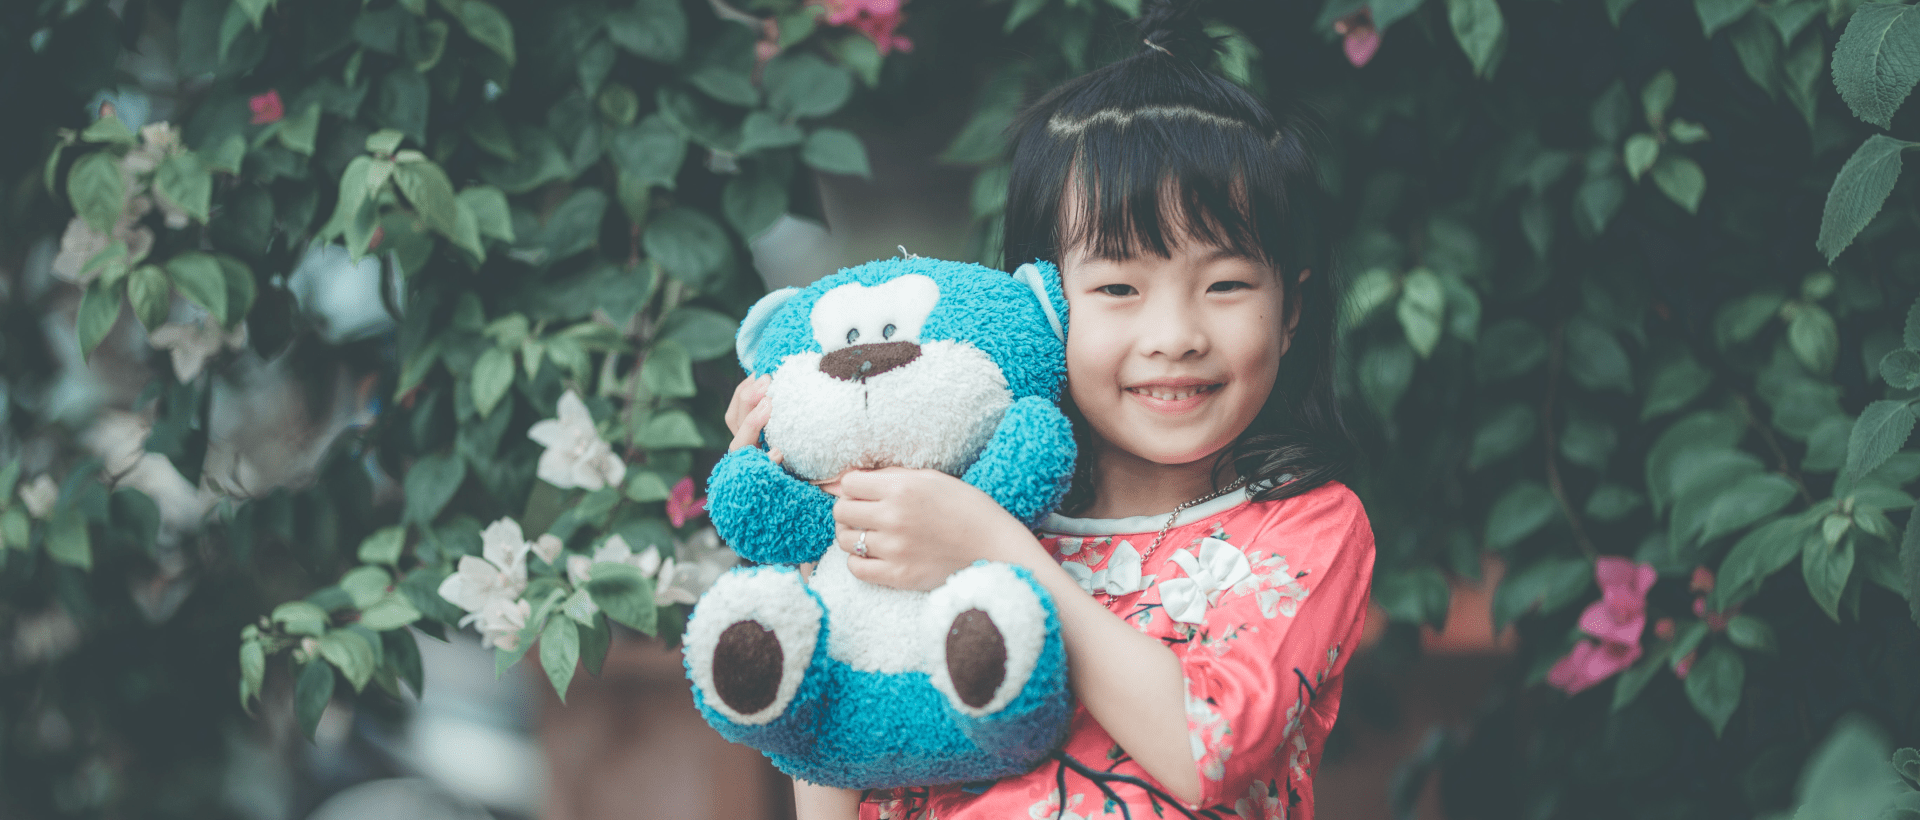 Mädchen mit Teddybär sinnbildlich für Kinder als Markenbotschafter und Influencer xeit